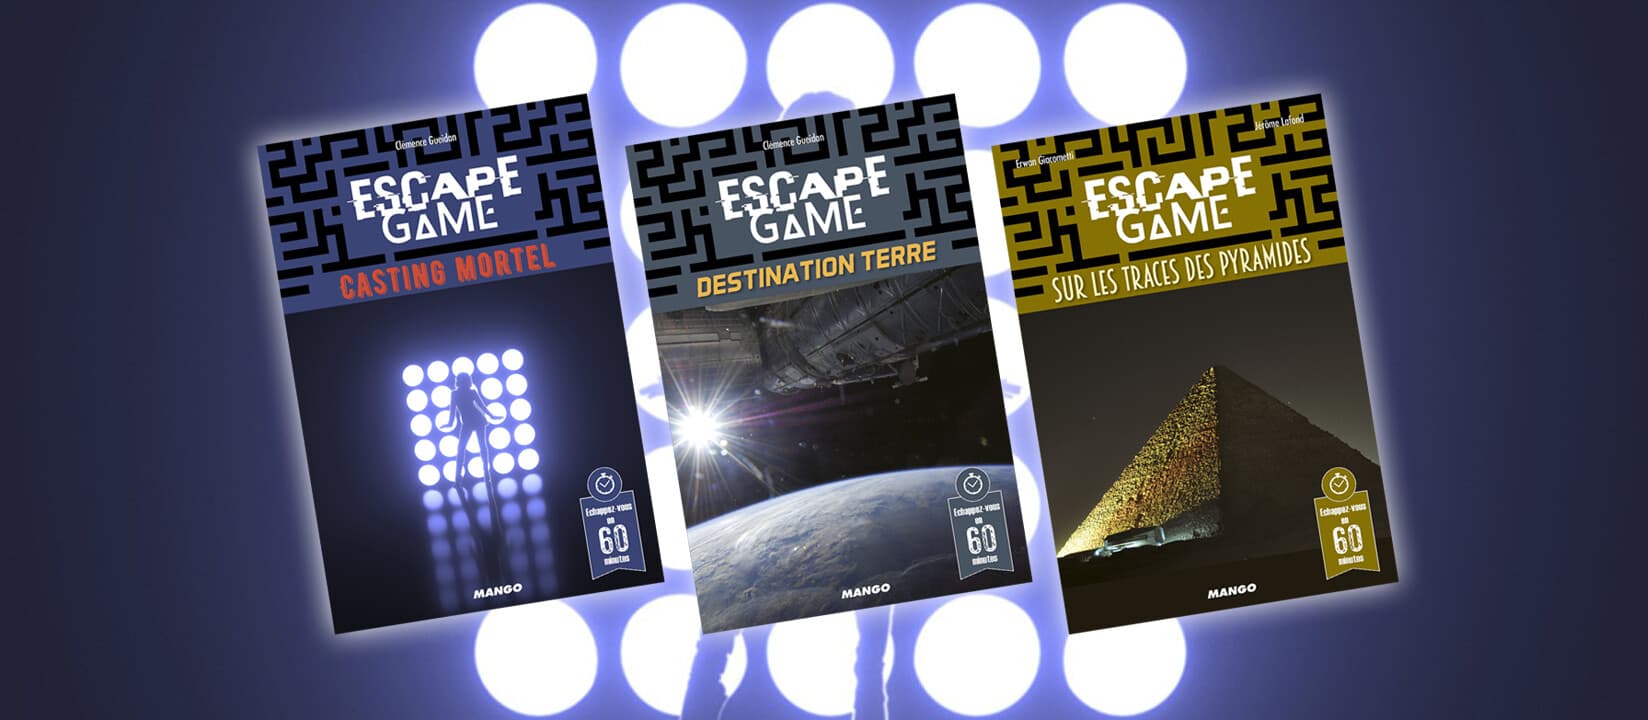 Escape Game : le Casting des Pyramides de l'Espace